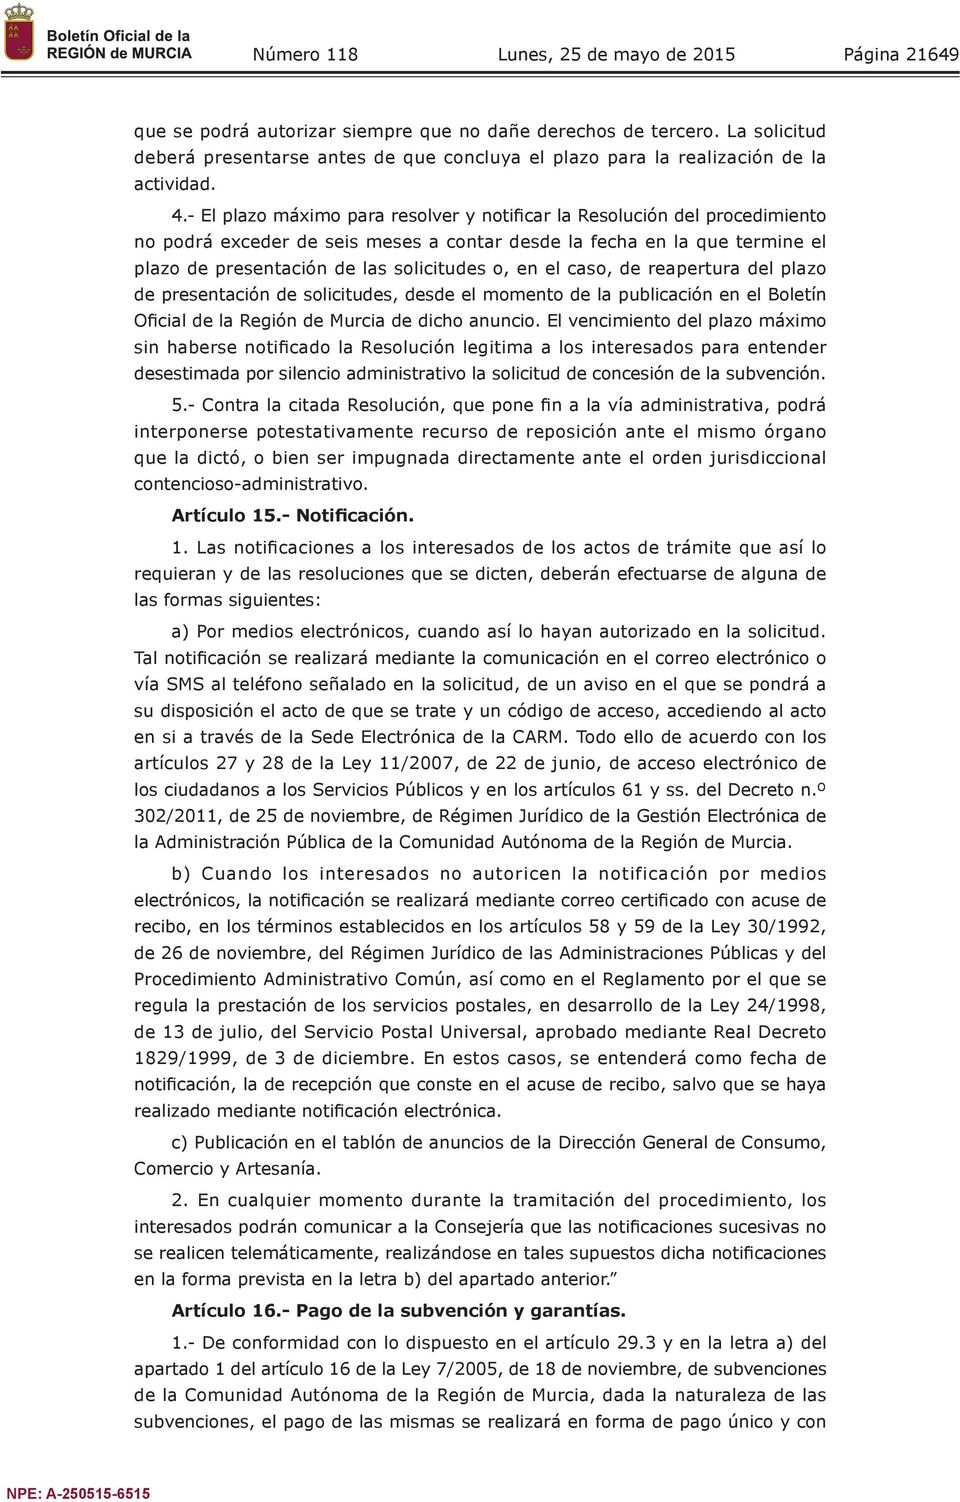 el caso, de reapertura del plazo de presentación de solicitudes, desde el momento de la publicación en el Boletín Oficial de la Región de Murcia de dicho anuncio.